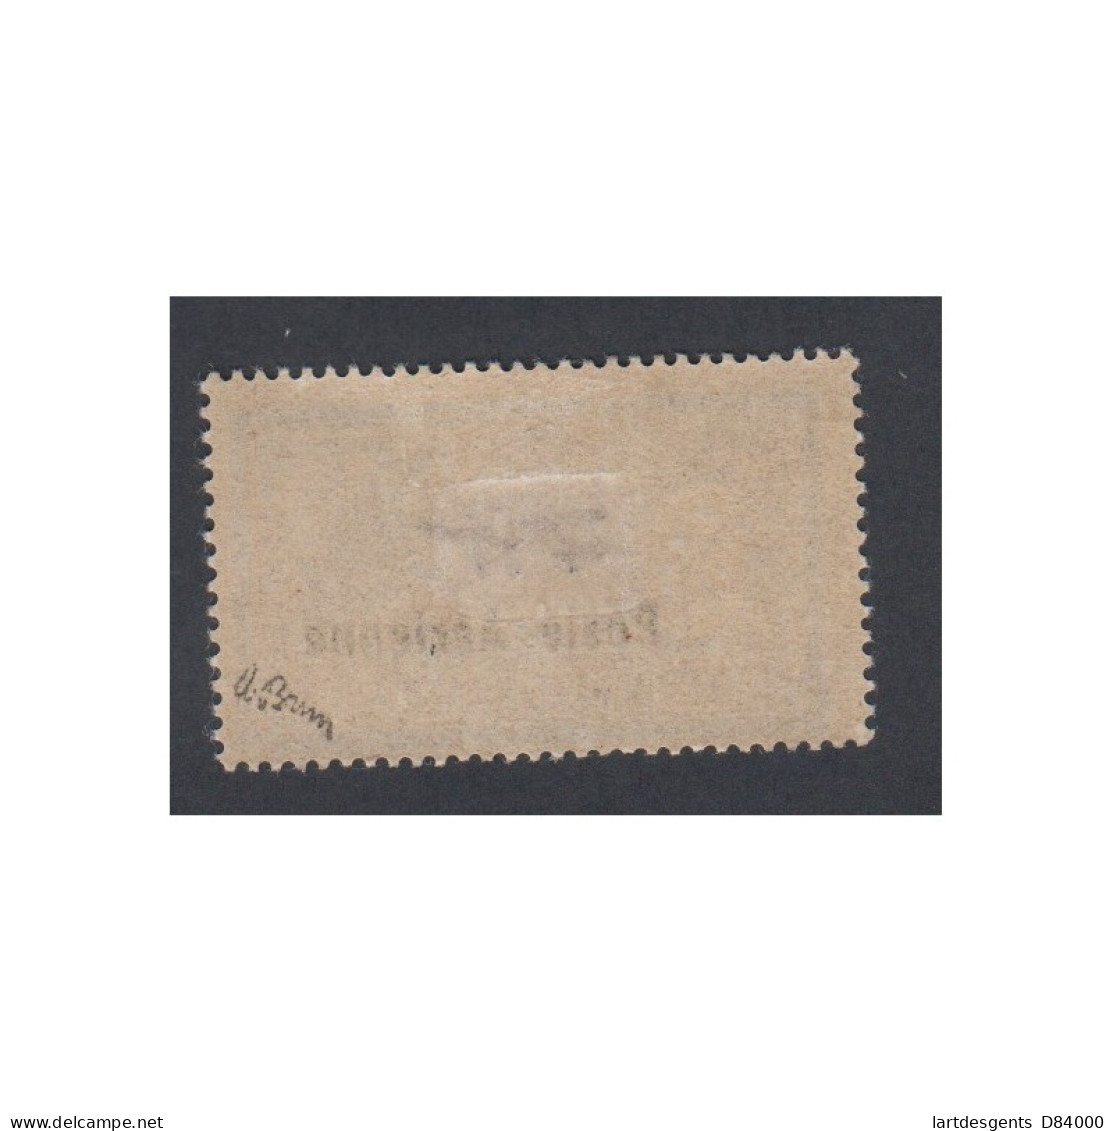 Timbre Poste Aérienne - Timbre N°2 - 1927 - Neuf* Avec Charnière Signé Brun - Cote 250 Euros- Lartdesgents - 1927-1959 Postfris